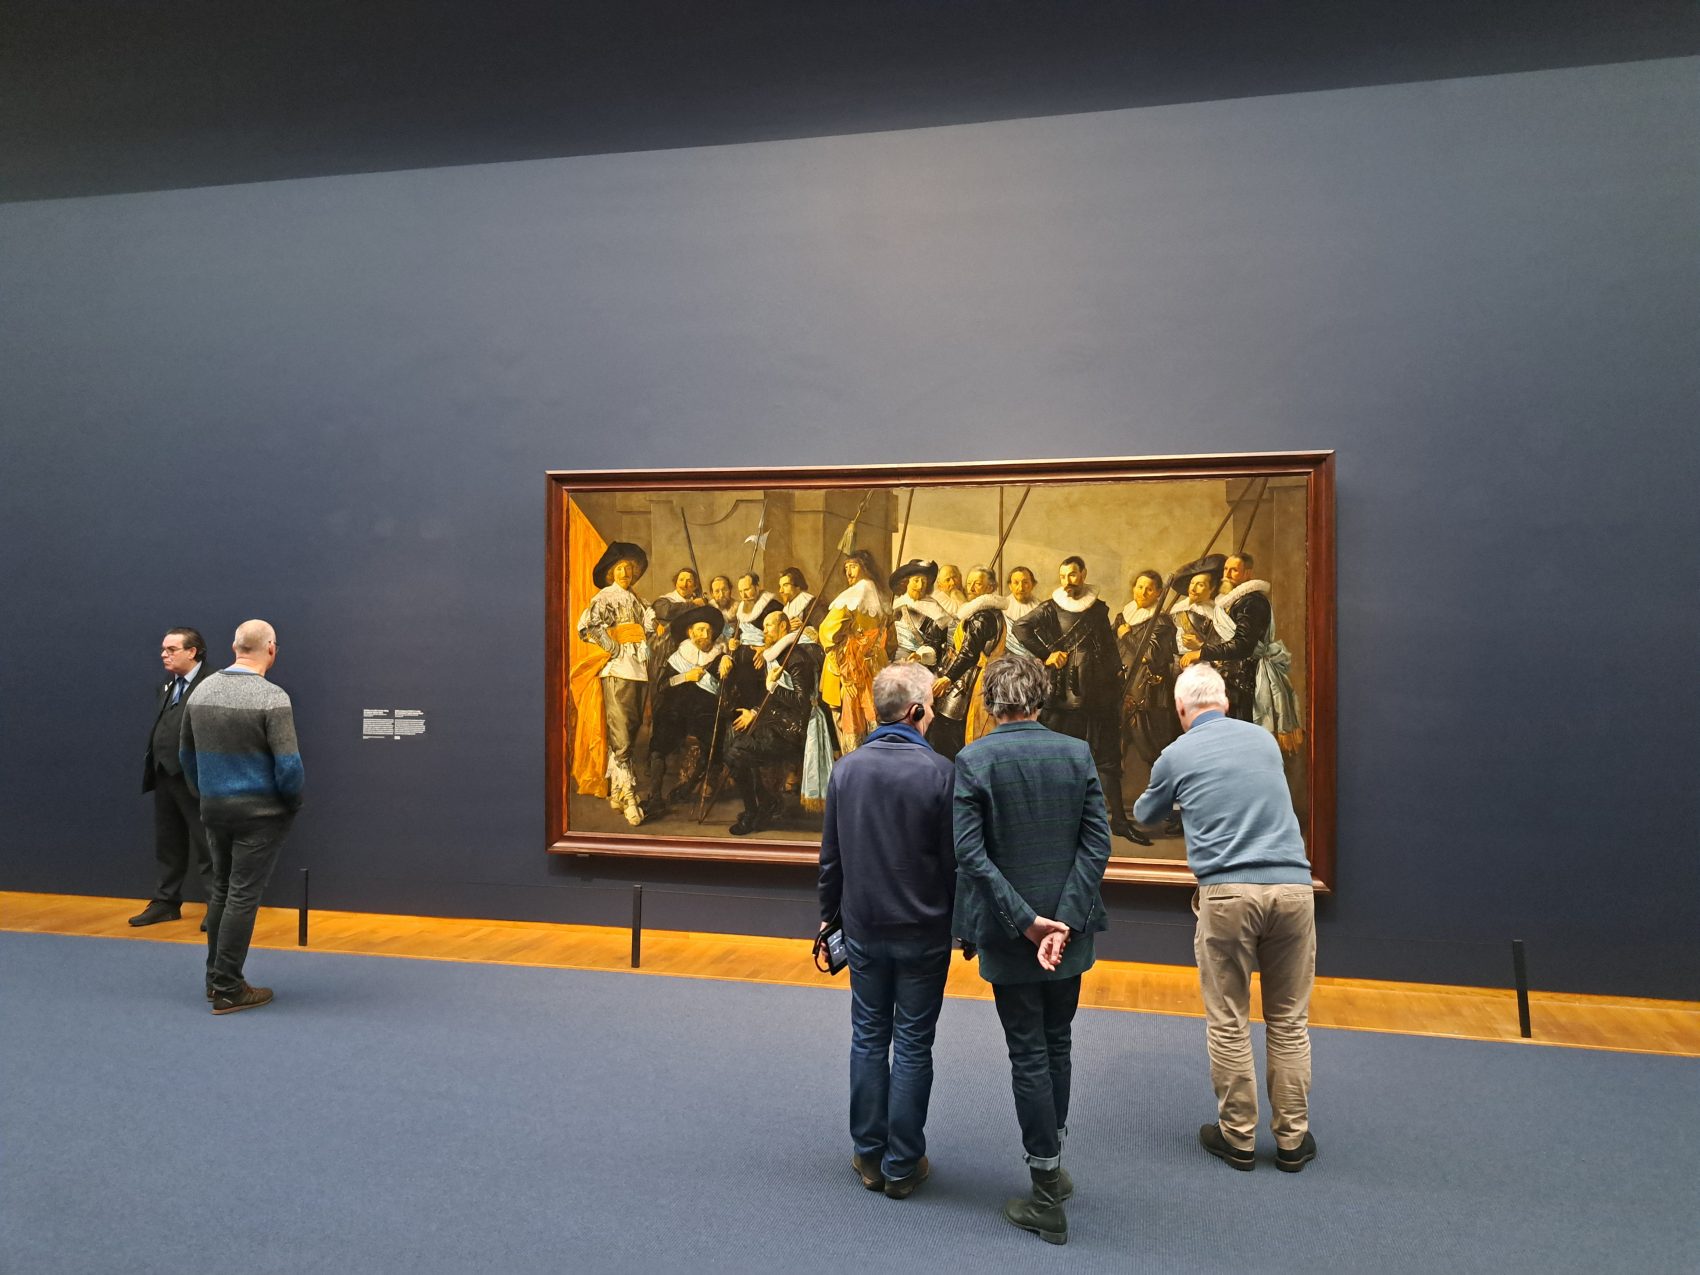 Frans Hals show open now